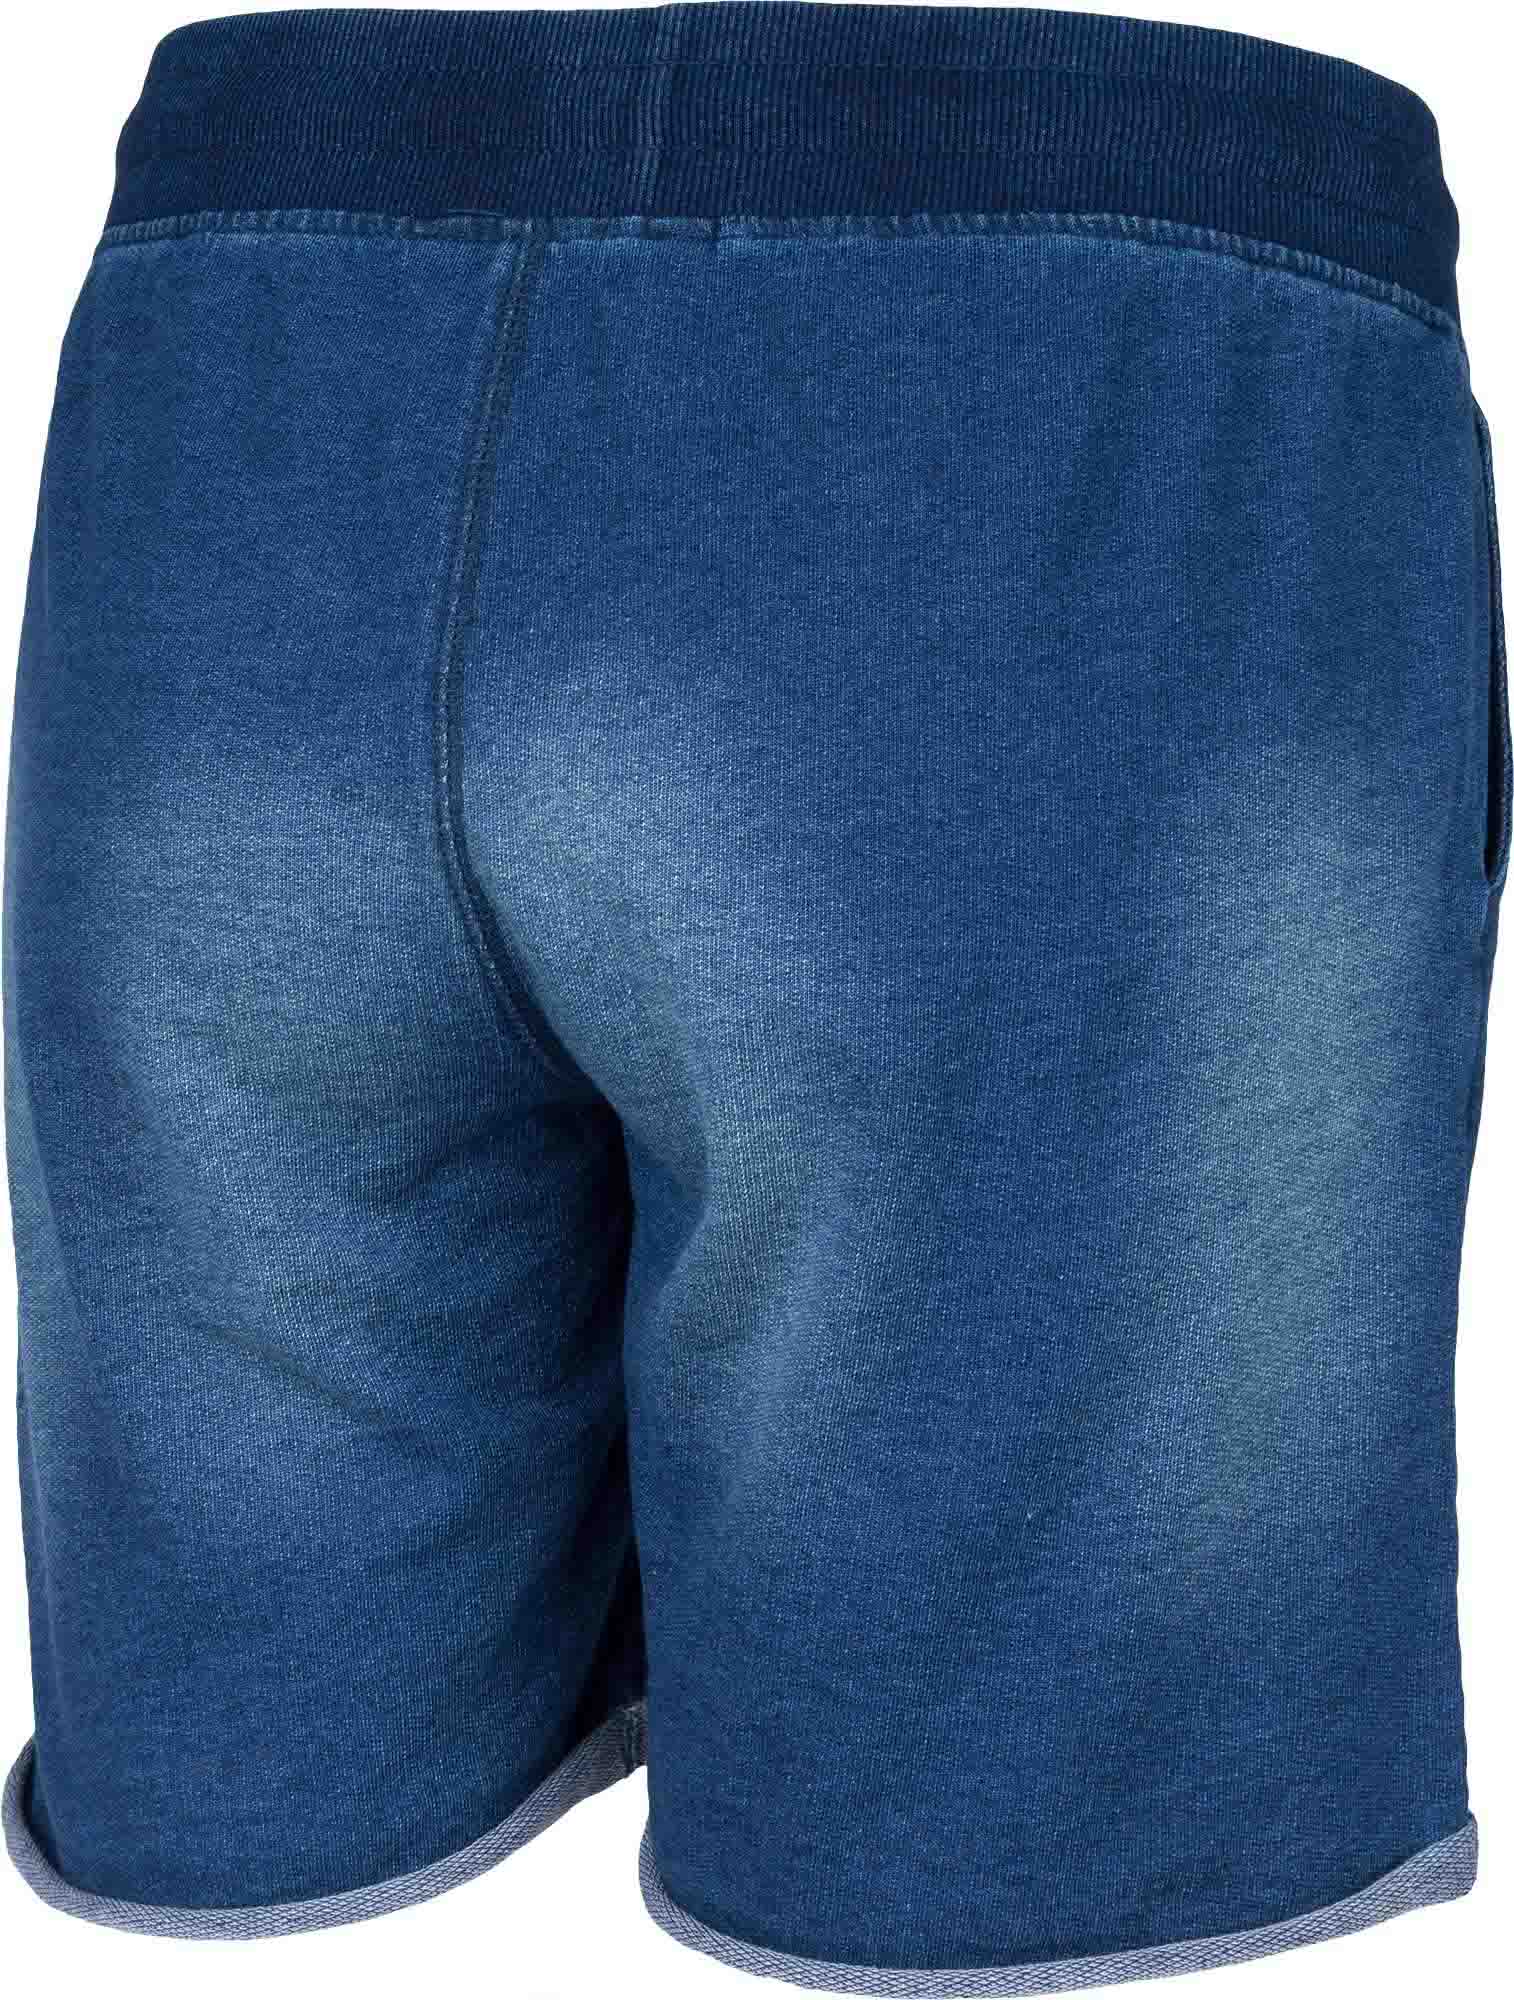 Pantaloni scurți damă cu aspect de blugi